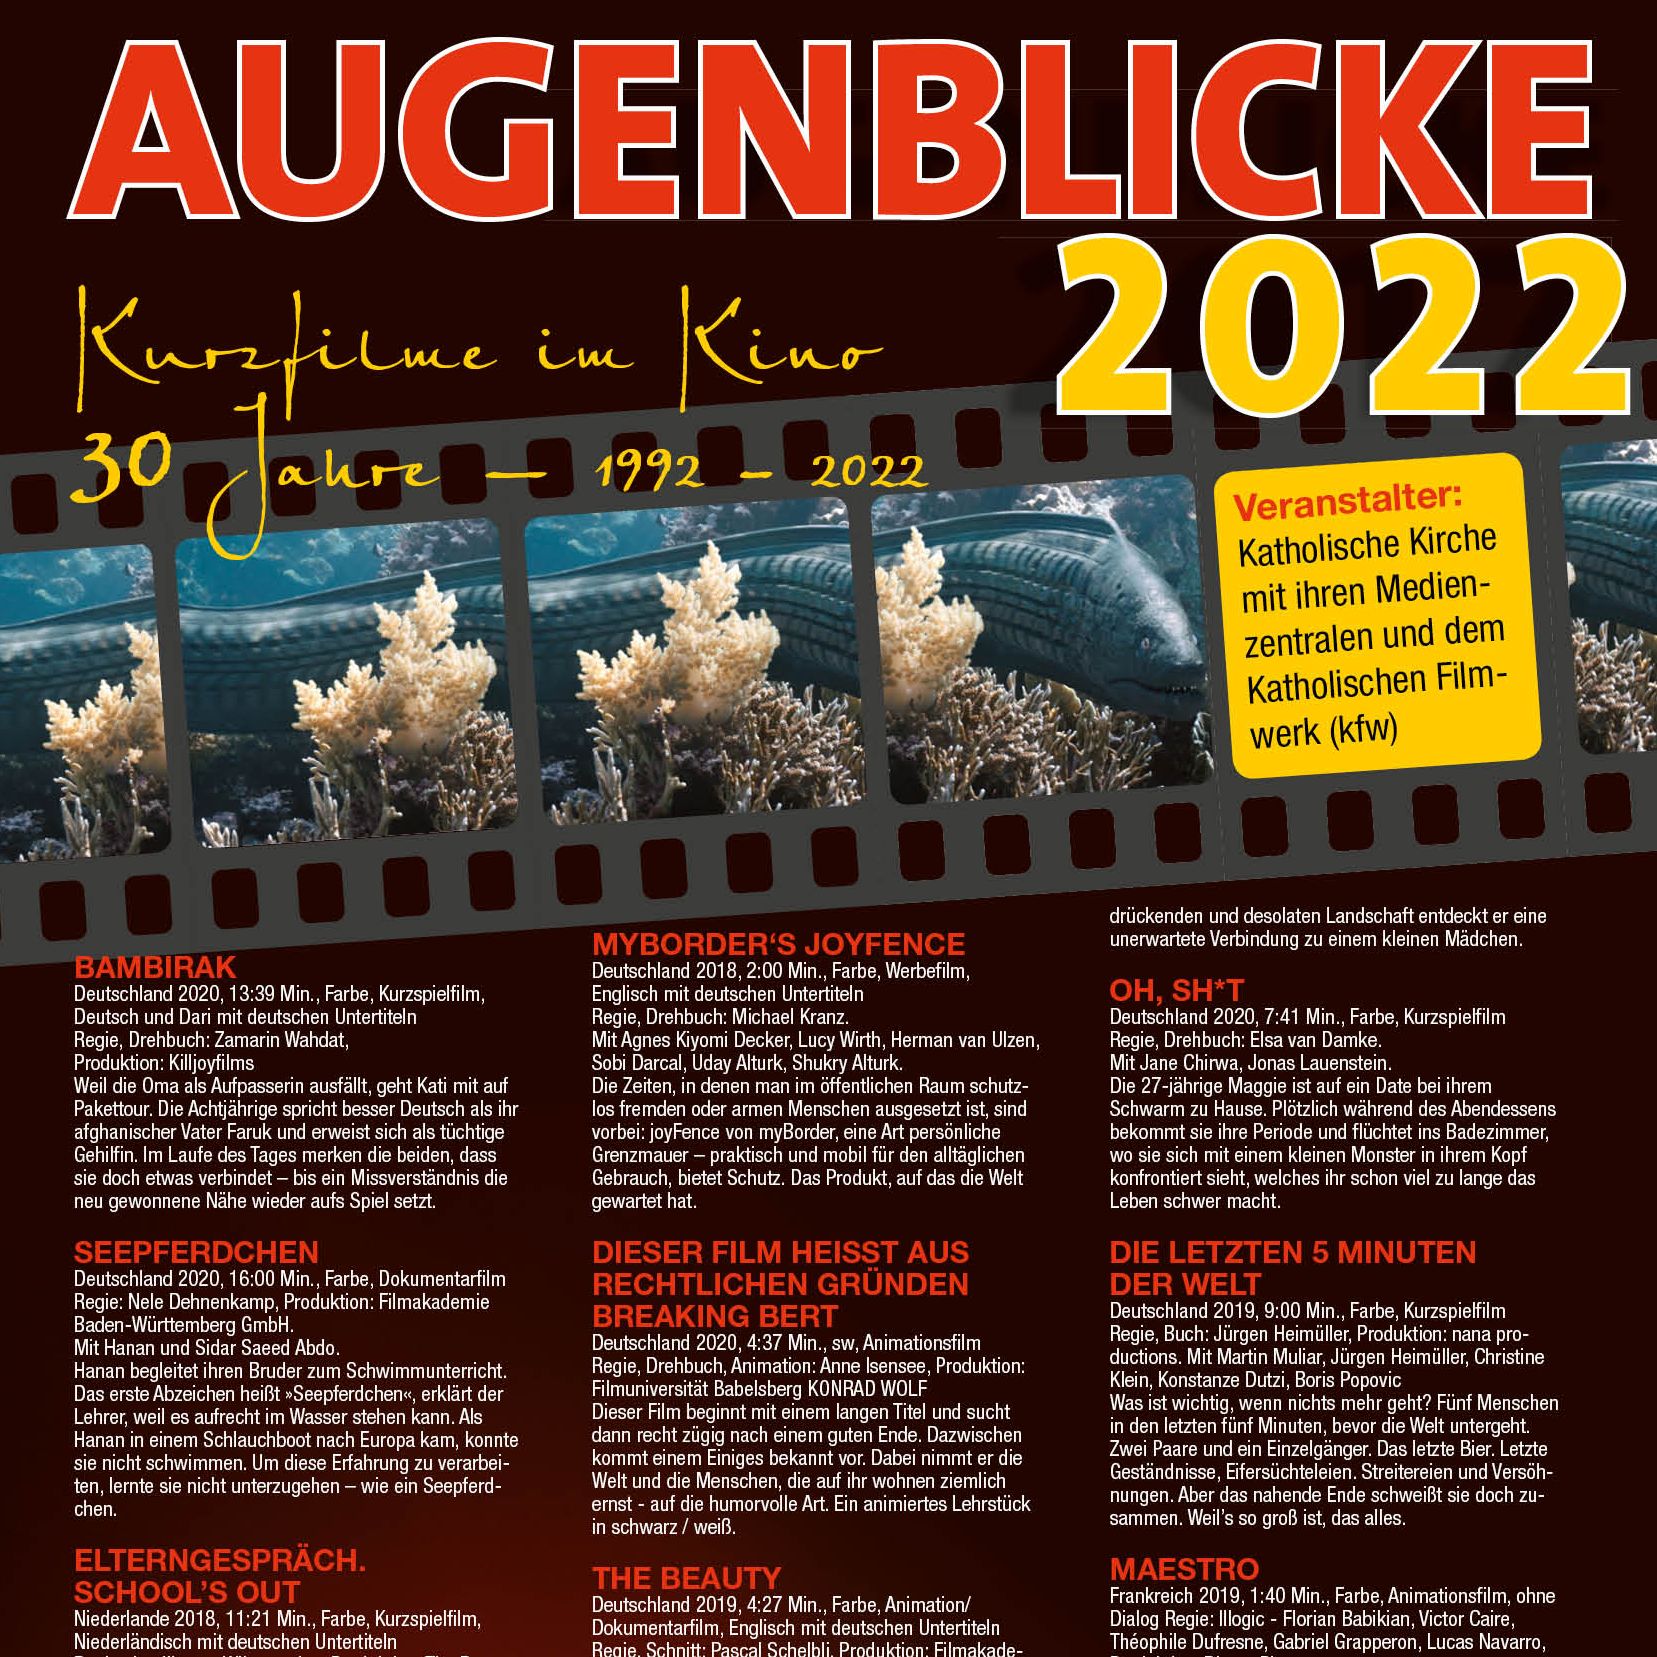 AUGENBLICKE 2022 Plakat Ausschnitt